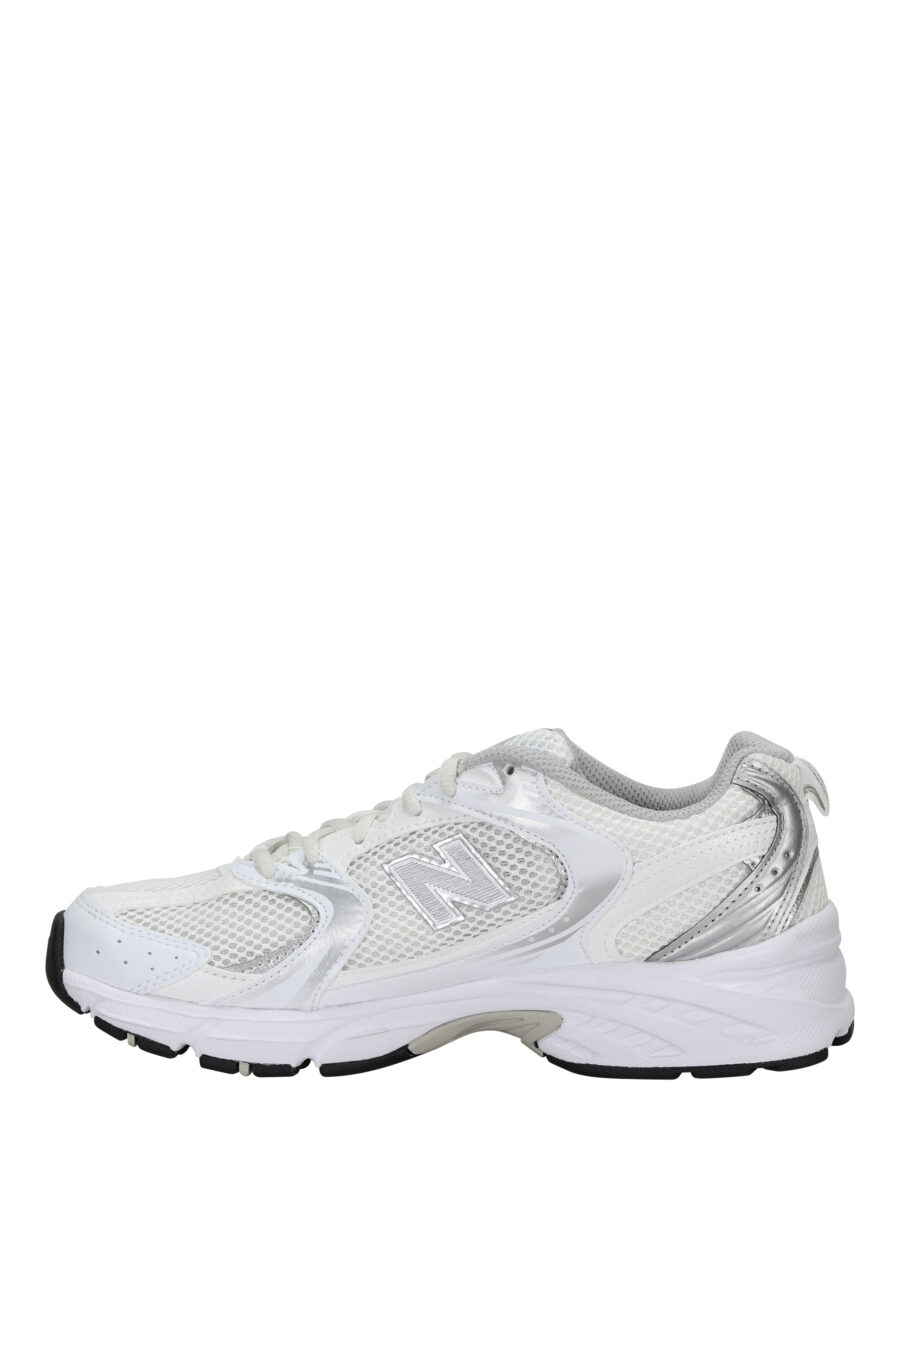 Zapatillas blancas con plateado "530" con logo "N" plateado - 739980463870 2